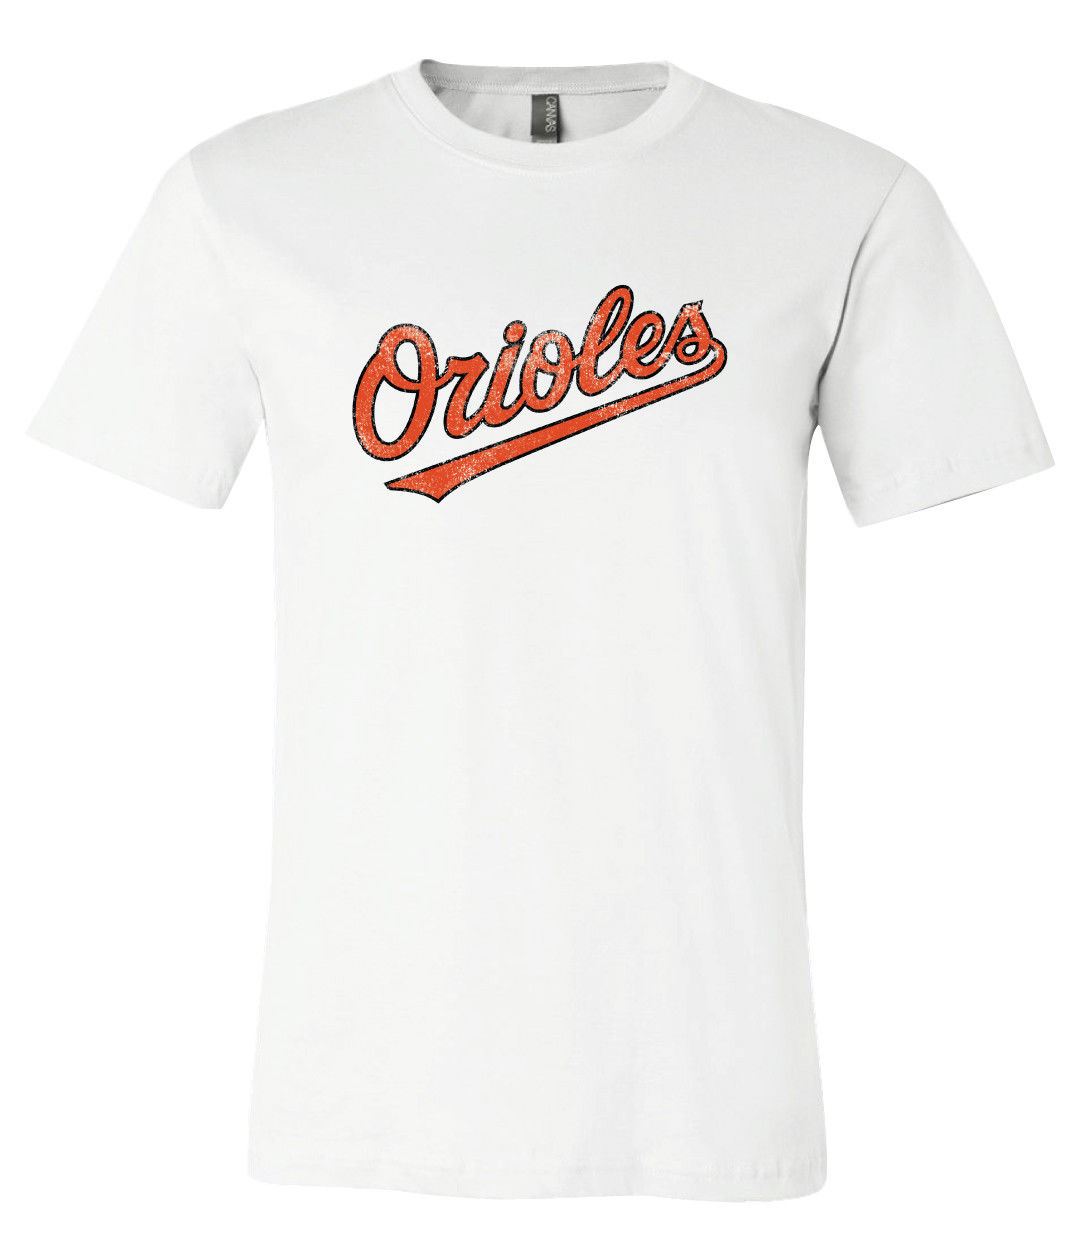 Retro Baltimore Orioles Tee Shirt 